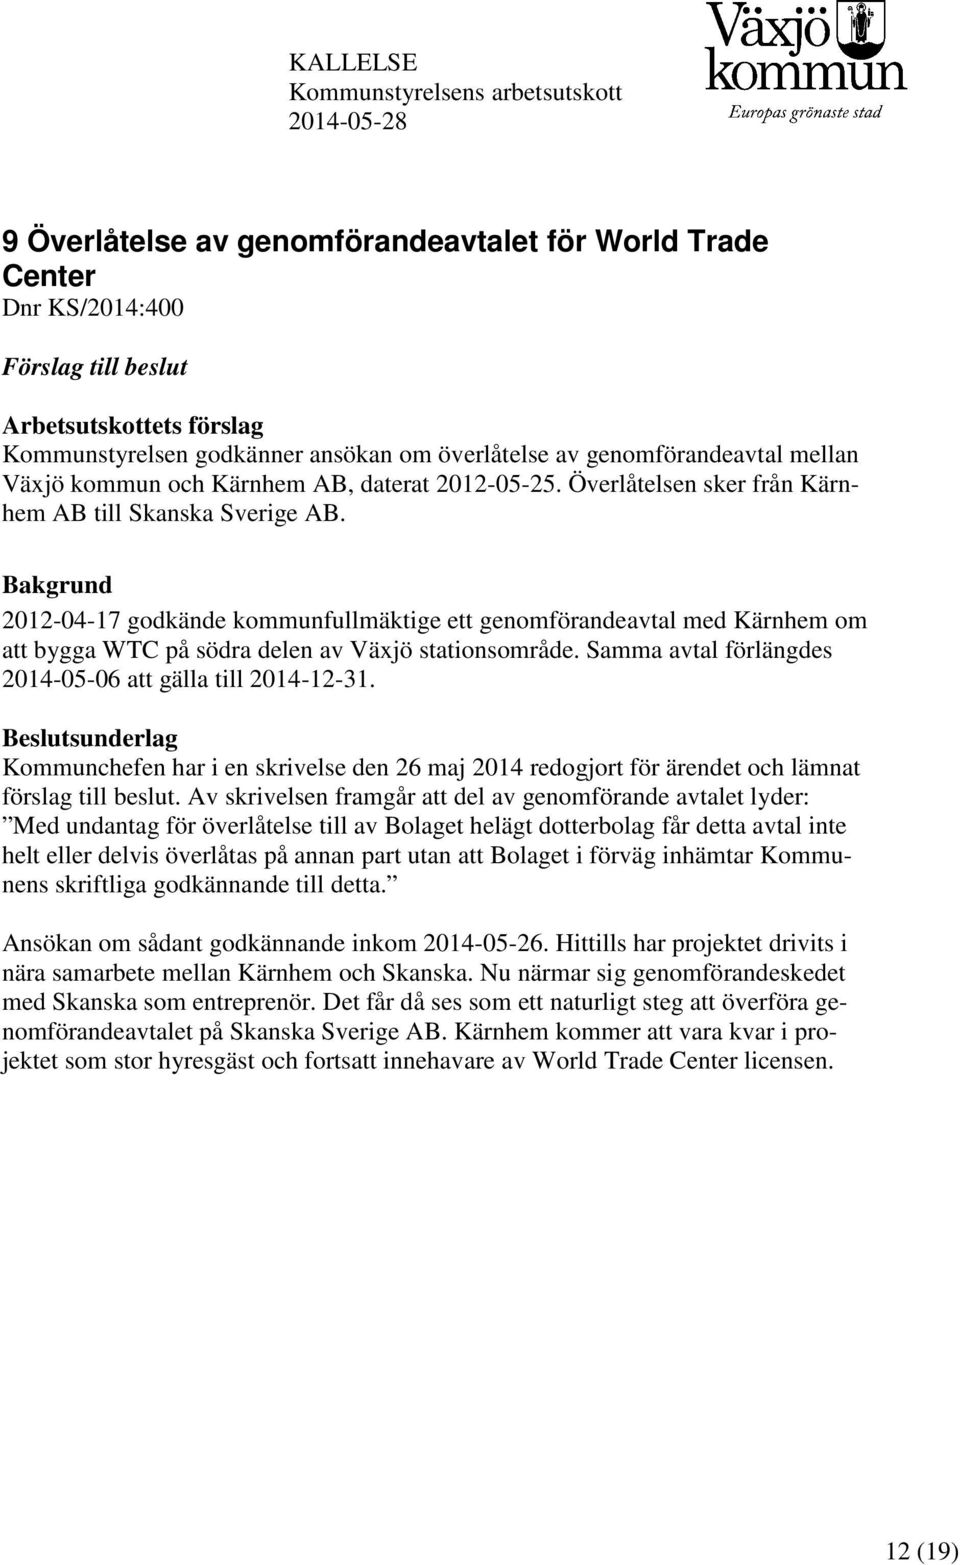 Bakgrund 2012-04-17 godkände kommunfullmäktige ett genomförandeavtal med Kärnhem om att bygga WTC på södra delen av Växjö stationsområde. Samma avtal förlängdes 2014-05-06 att gälla till 2014-12-31.